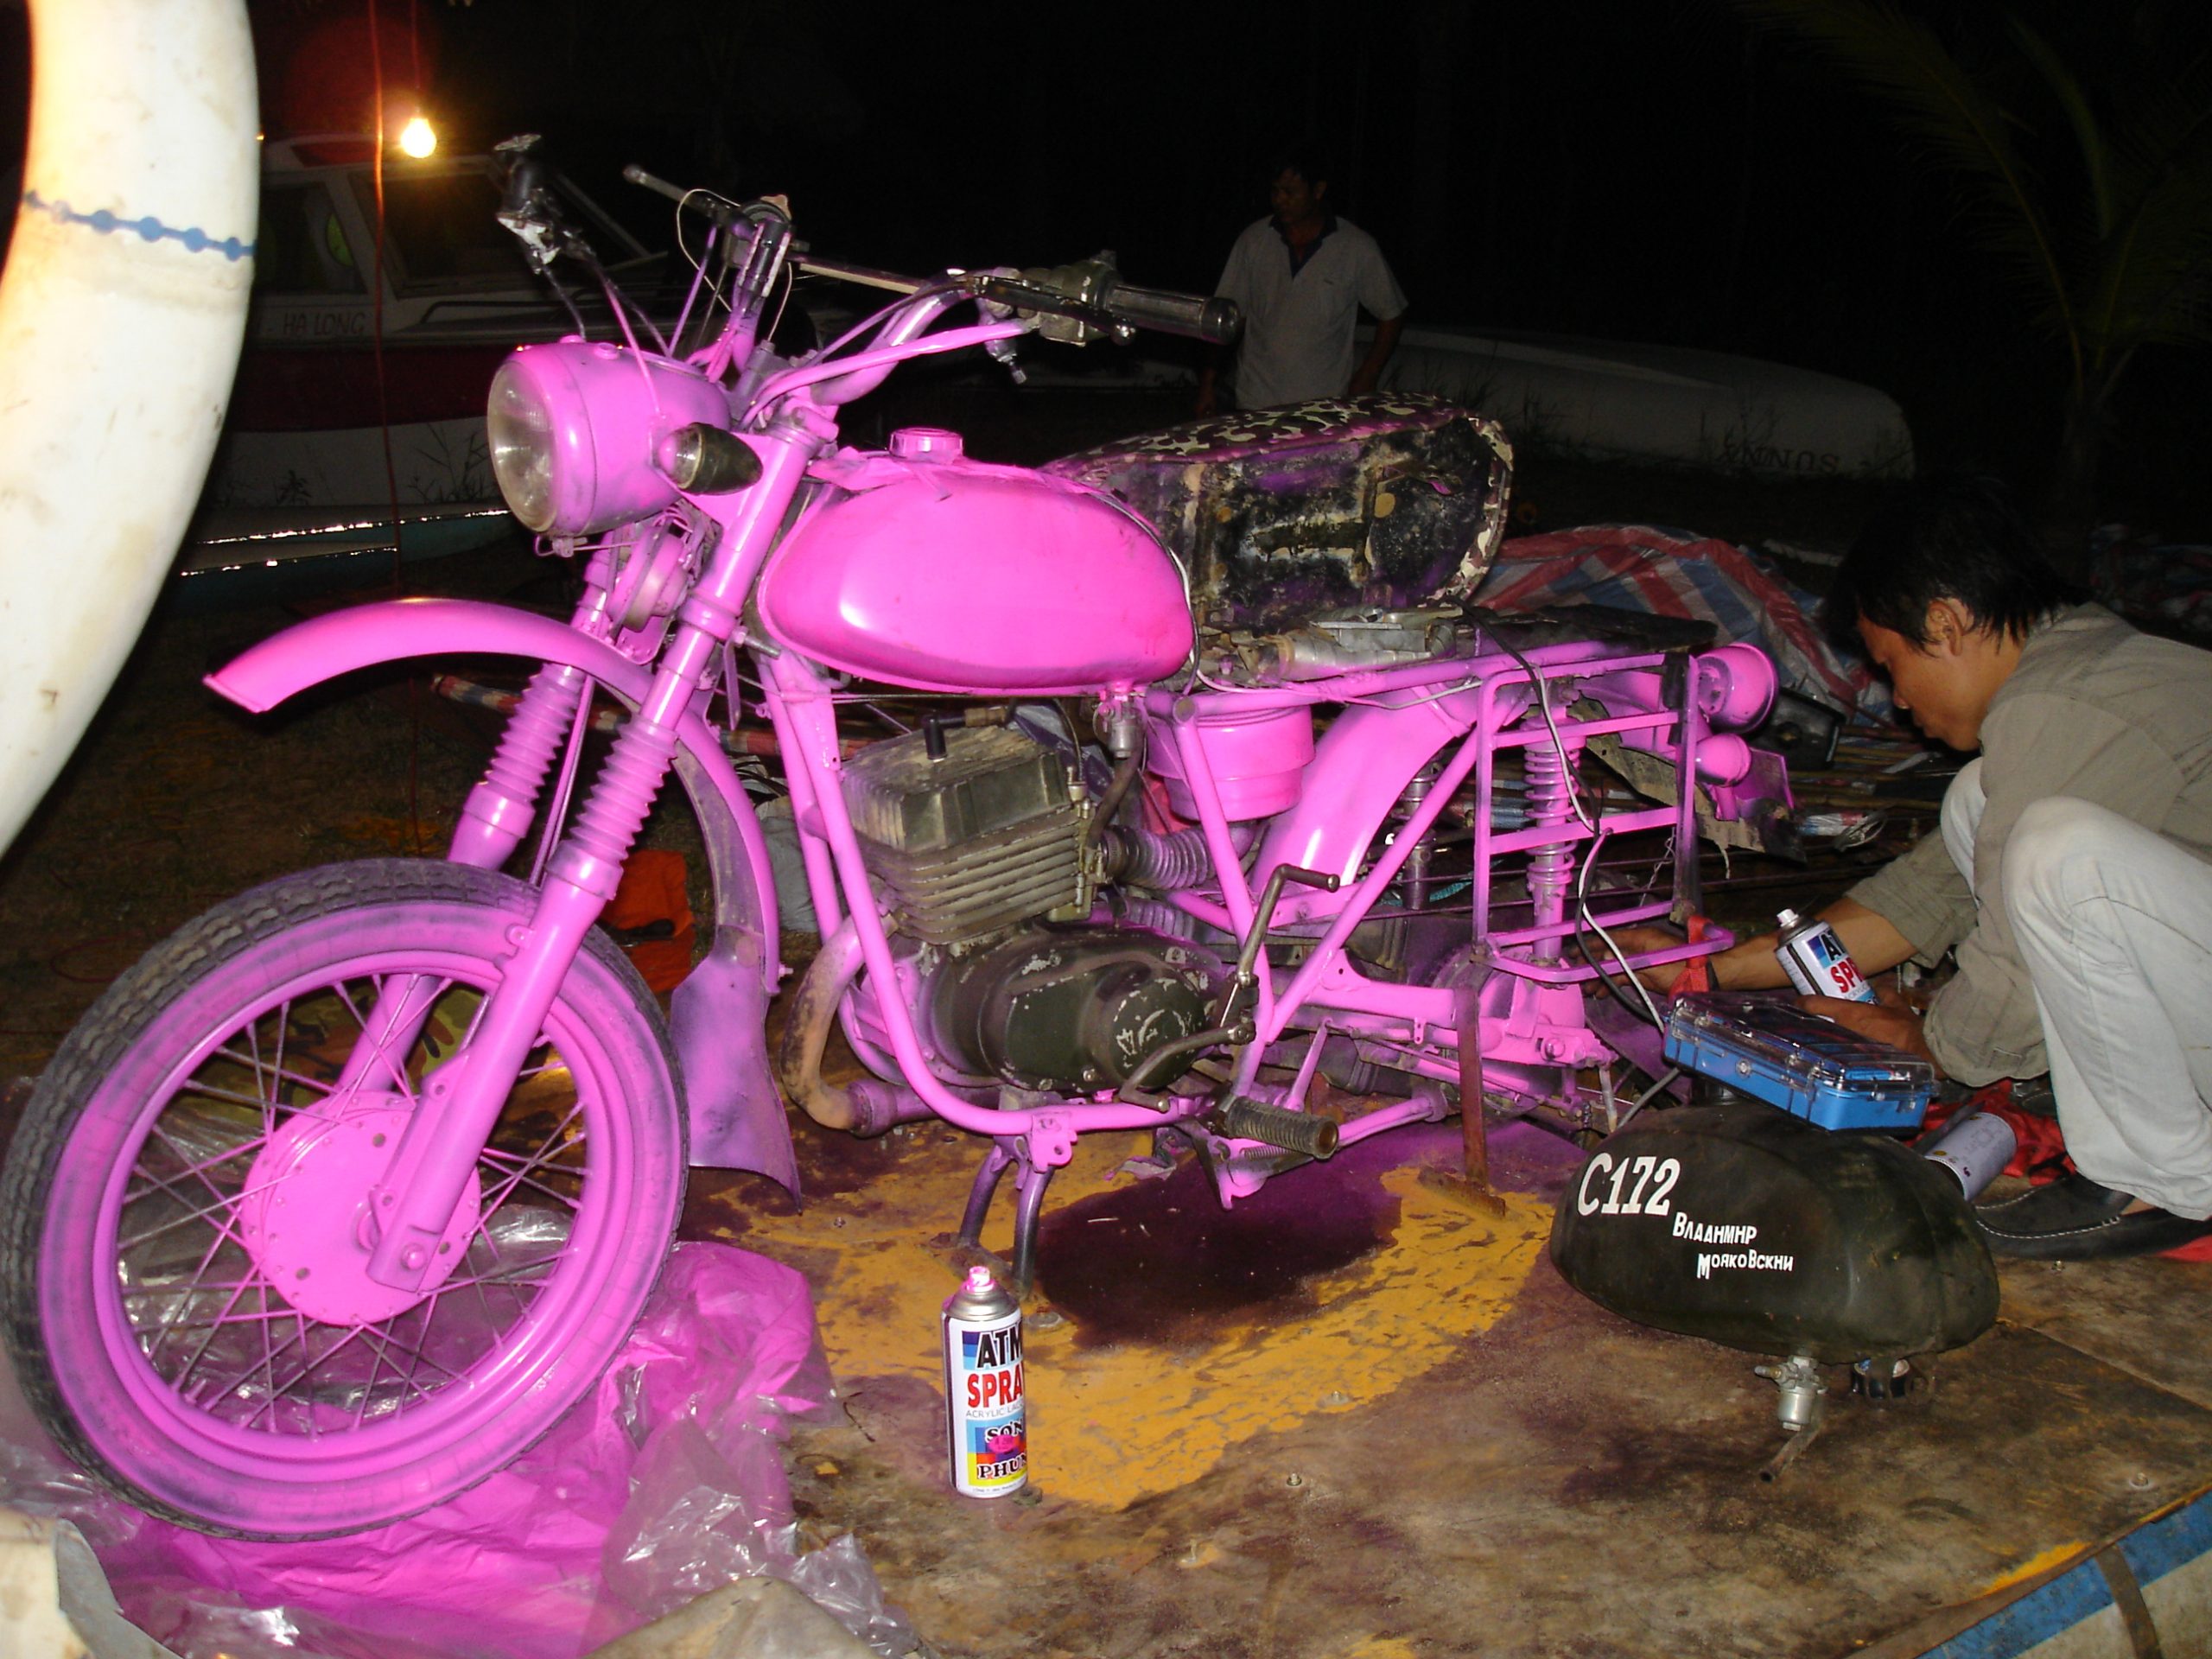 Richard Hammond's pink Minsk motorcycle